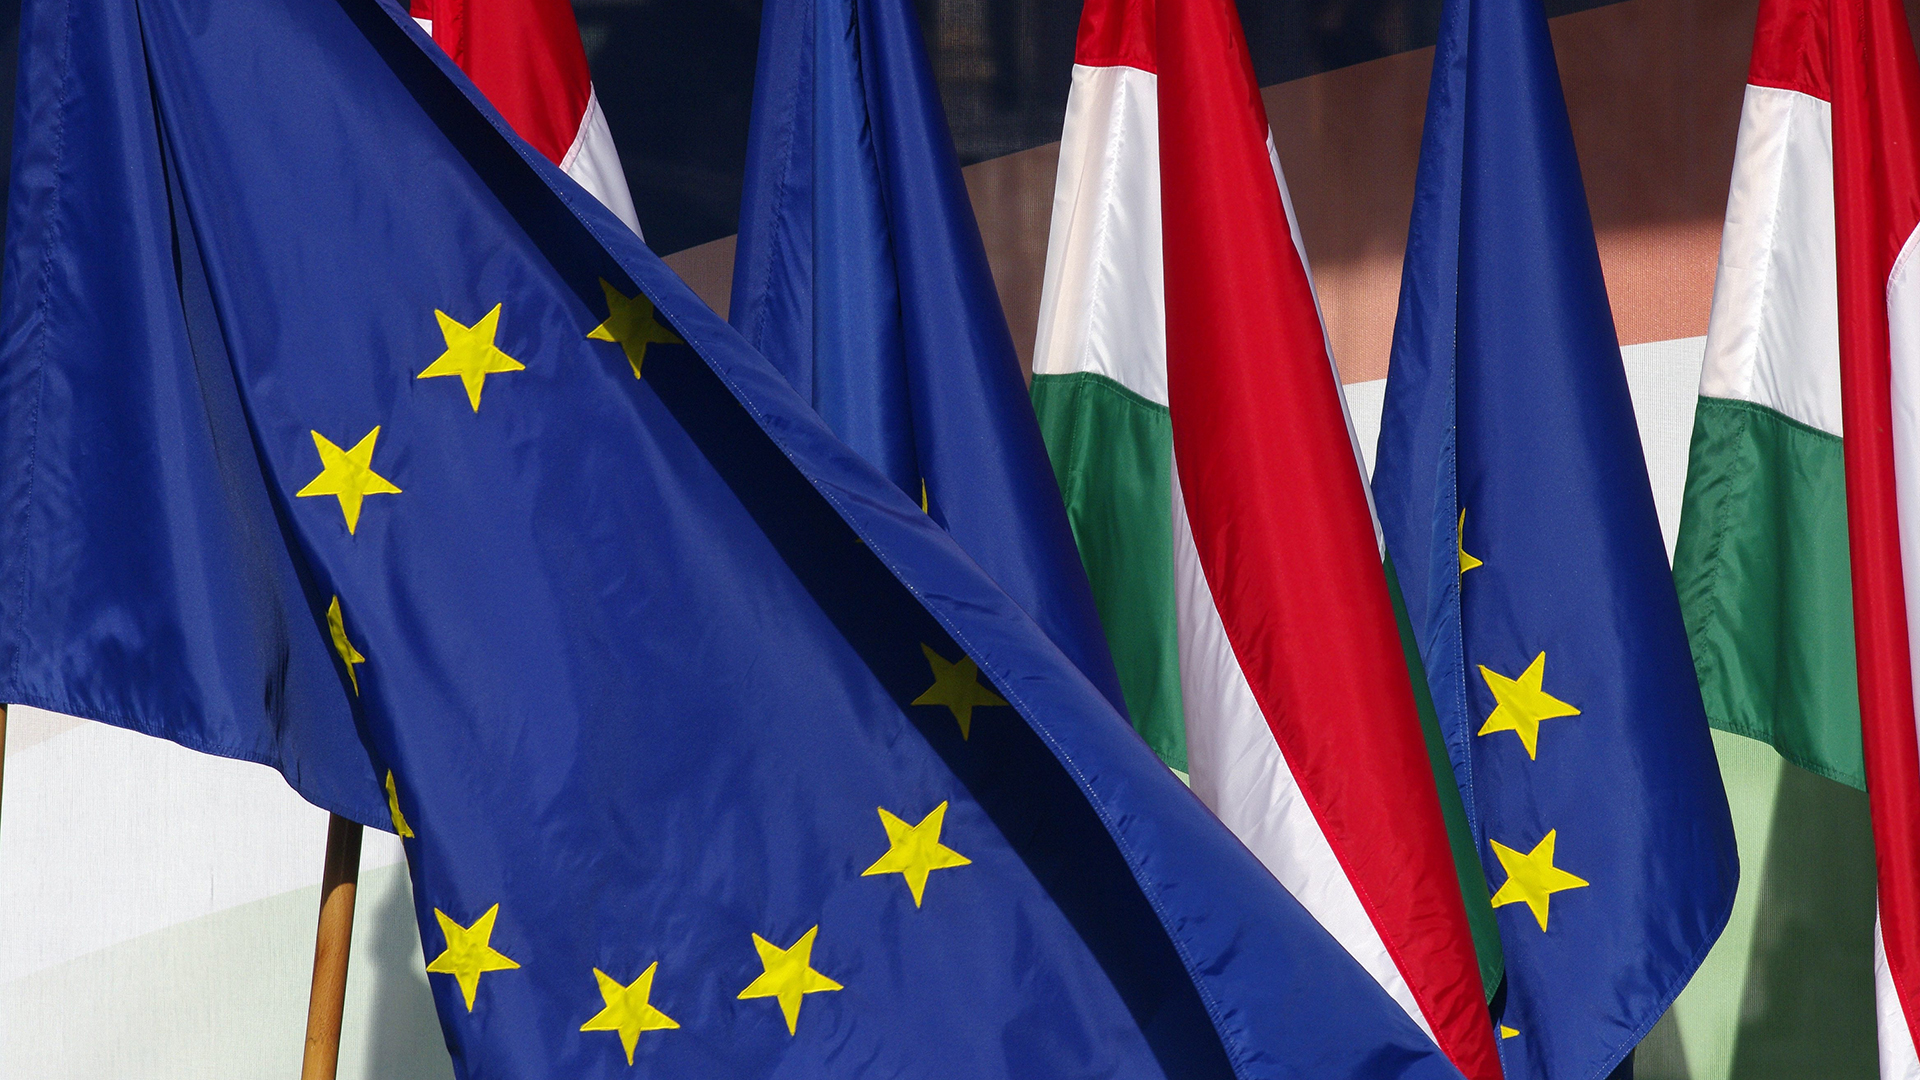 Die Flaggen der EU und Ungarns